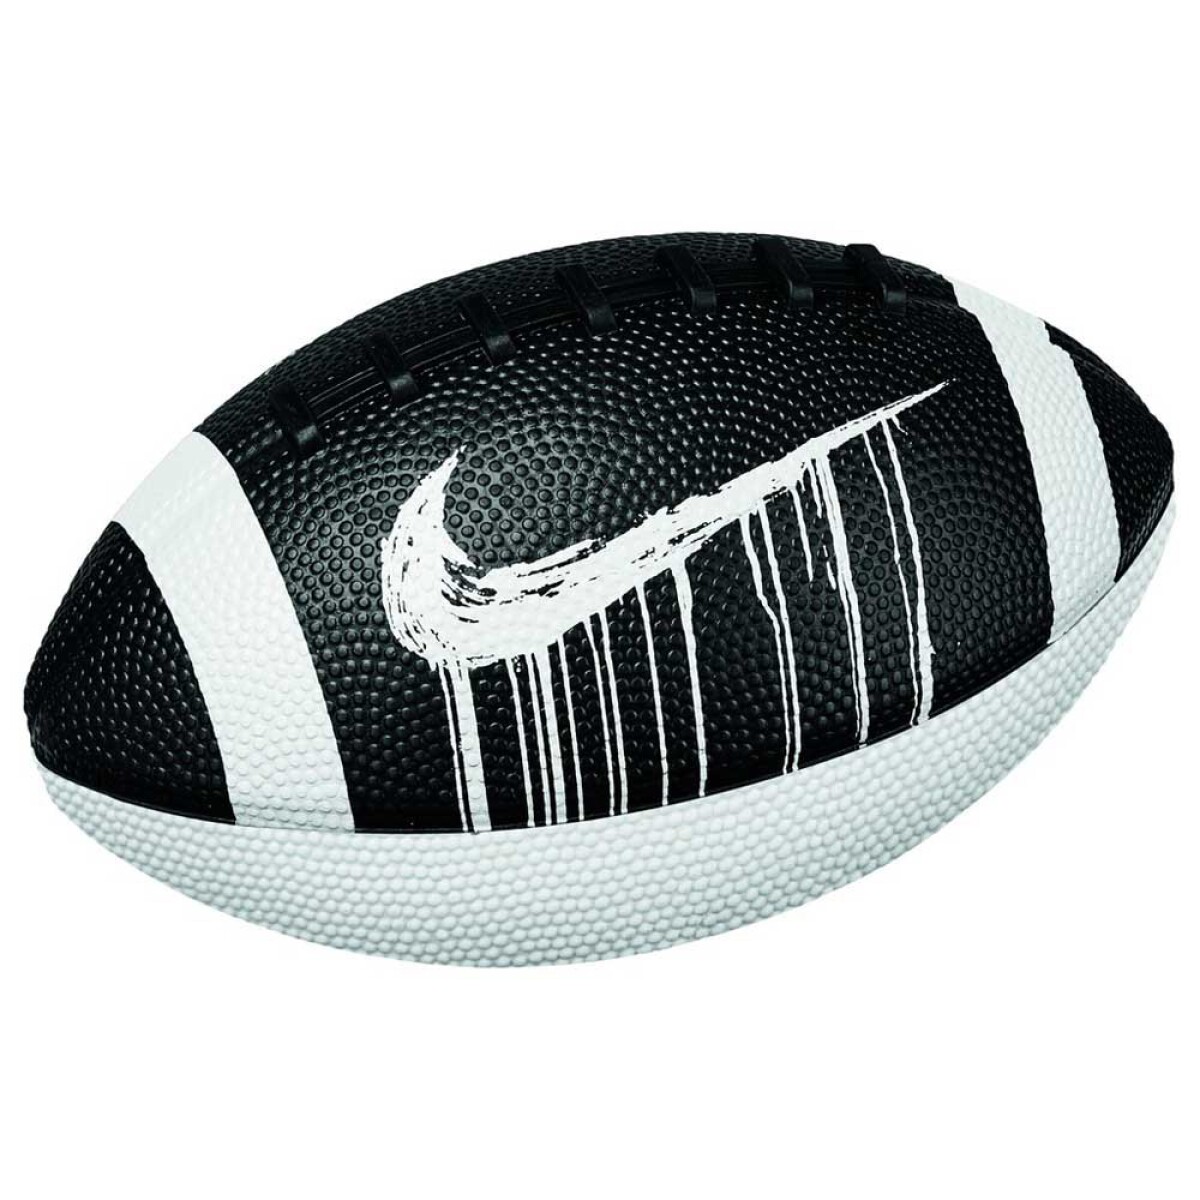 Pelota Rugby Nike Mini Spin 4.0 